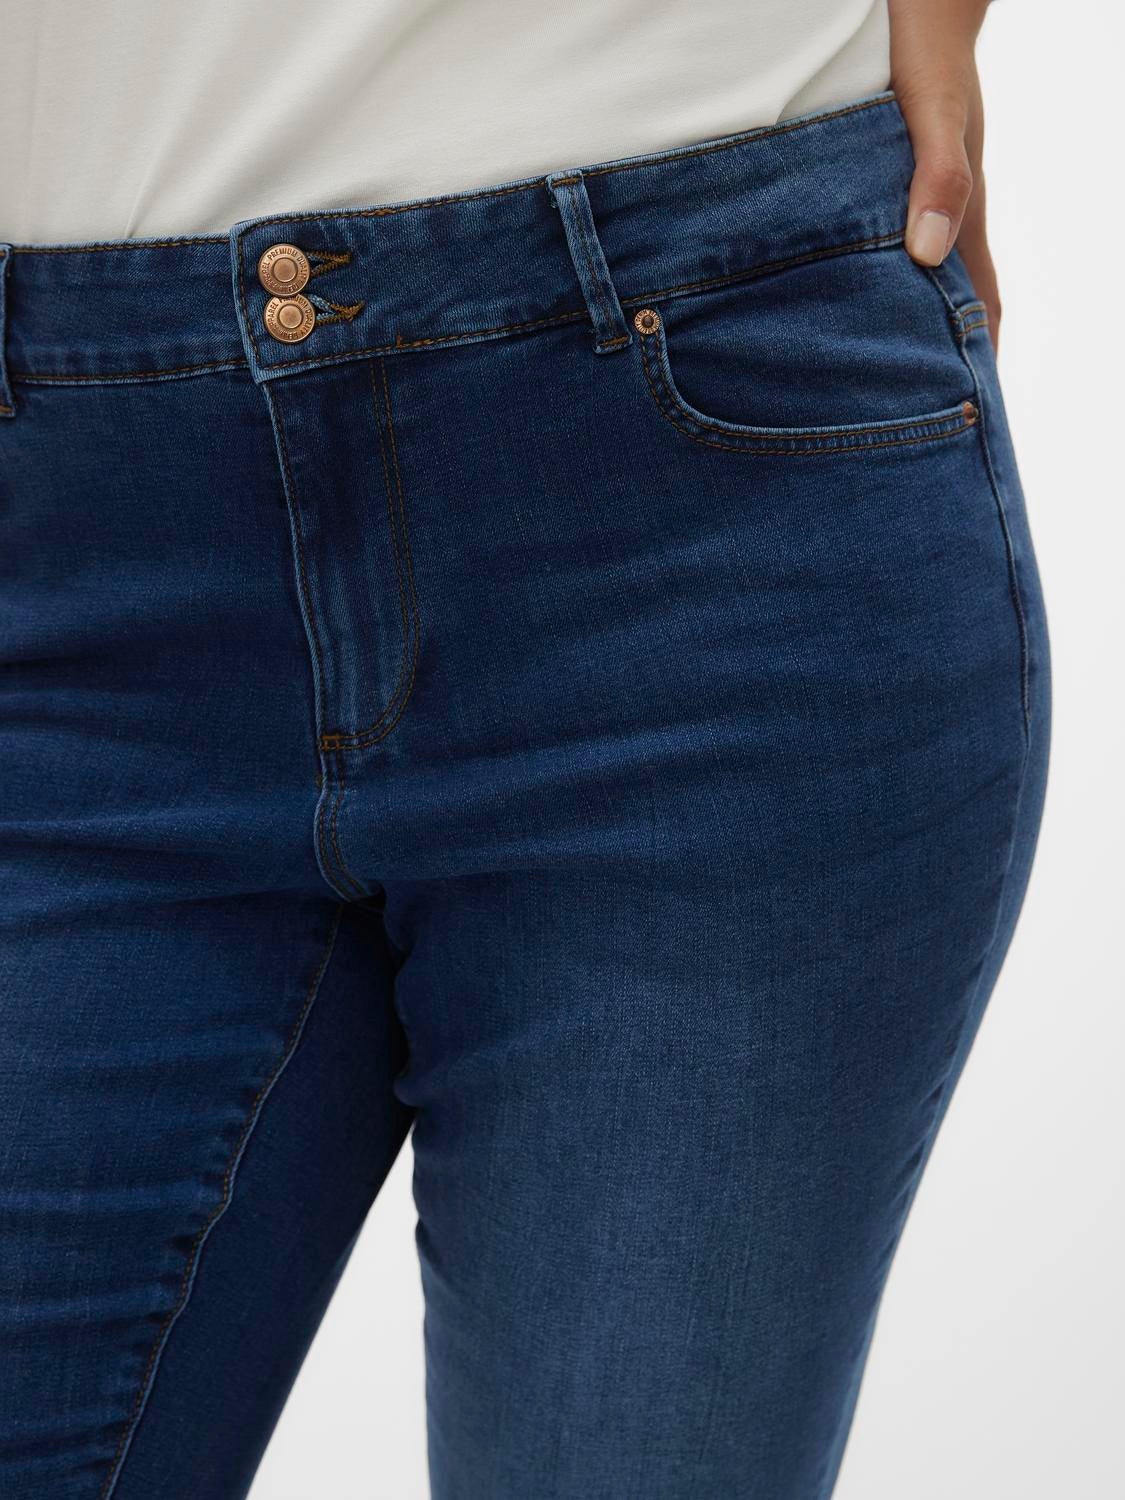 Vero Moda VMCSOPHIA Hohe Taille Slim Fit Jeans -Dark Blue Denim - 10295005